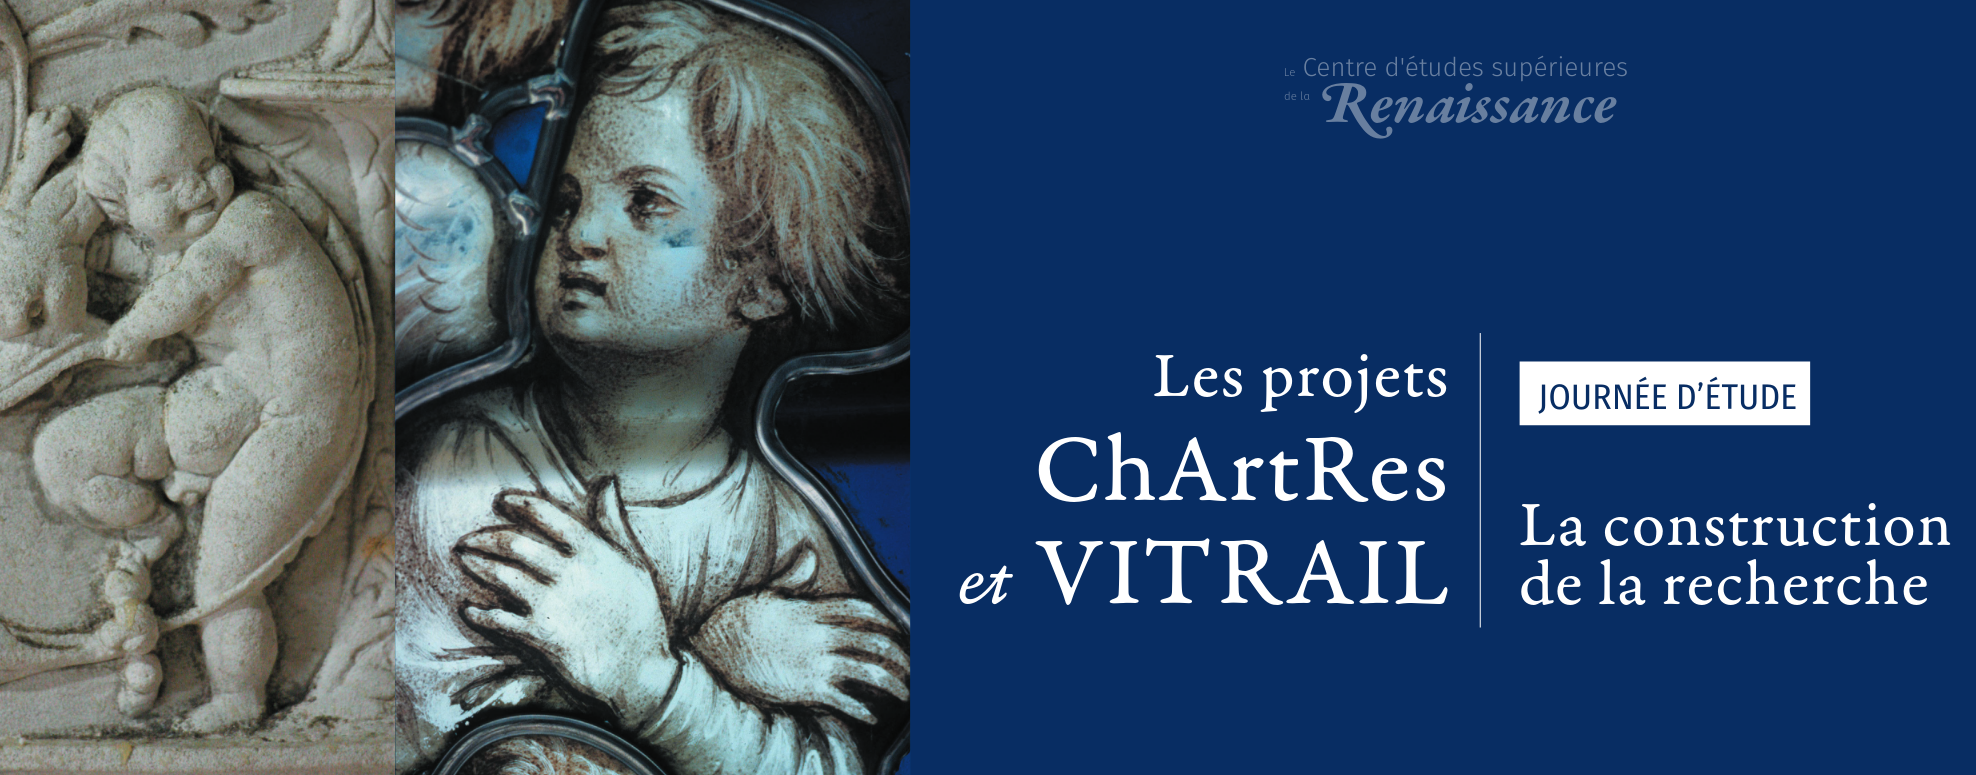 Journée d'études "Les projets ChArtRes et VITRAIL : la construction de la recherche"